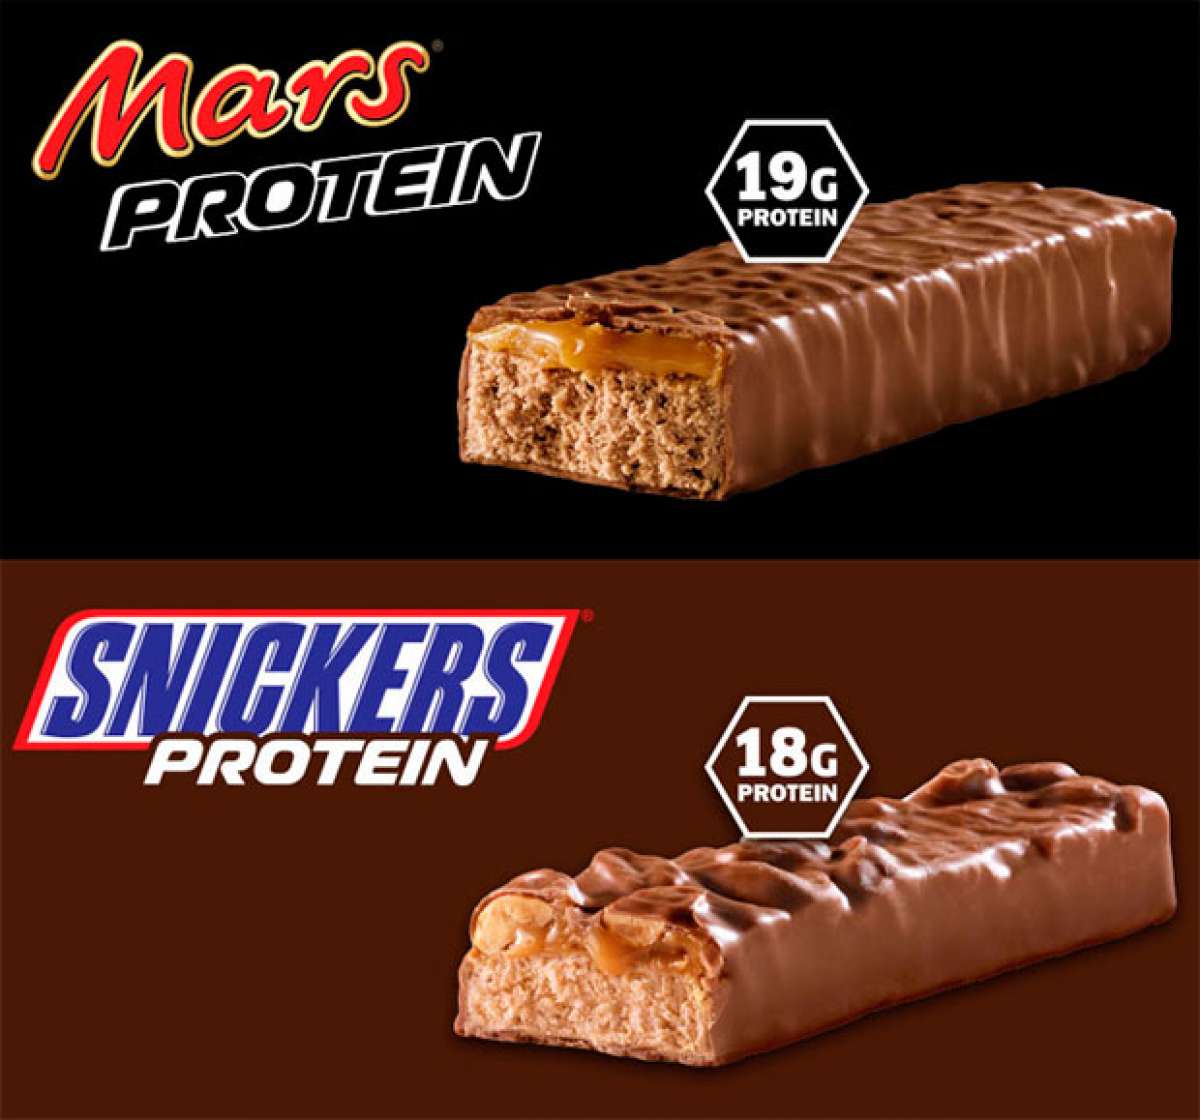 En TodoMountainBike: Una buena dosis de proteínas con las nuevas chocolatinas Snickers Protein y Mars Protein